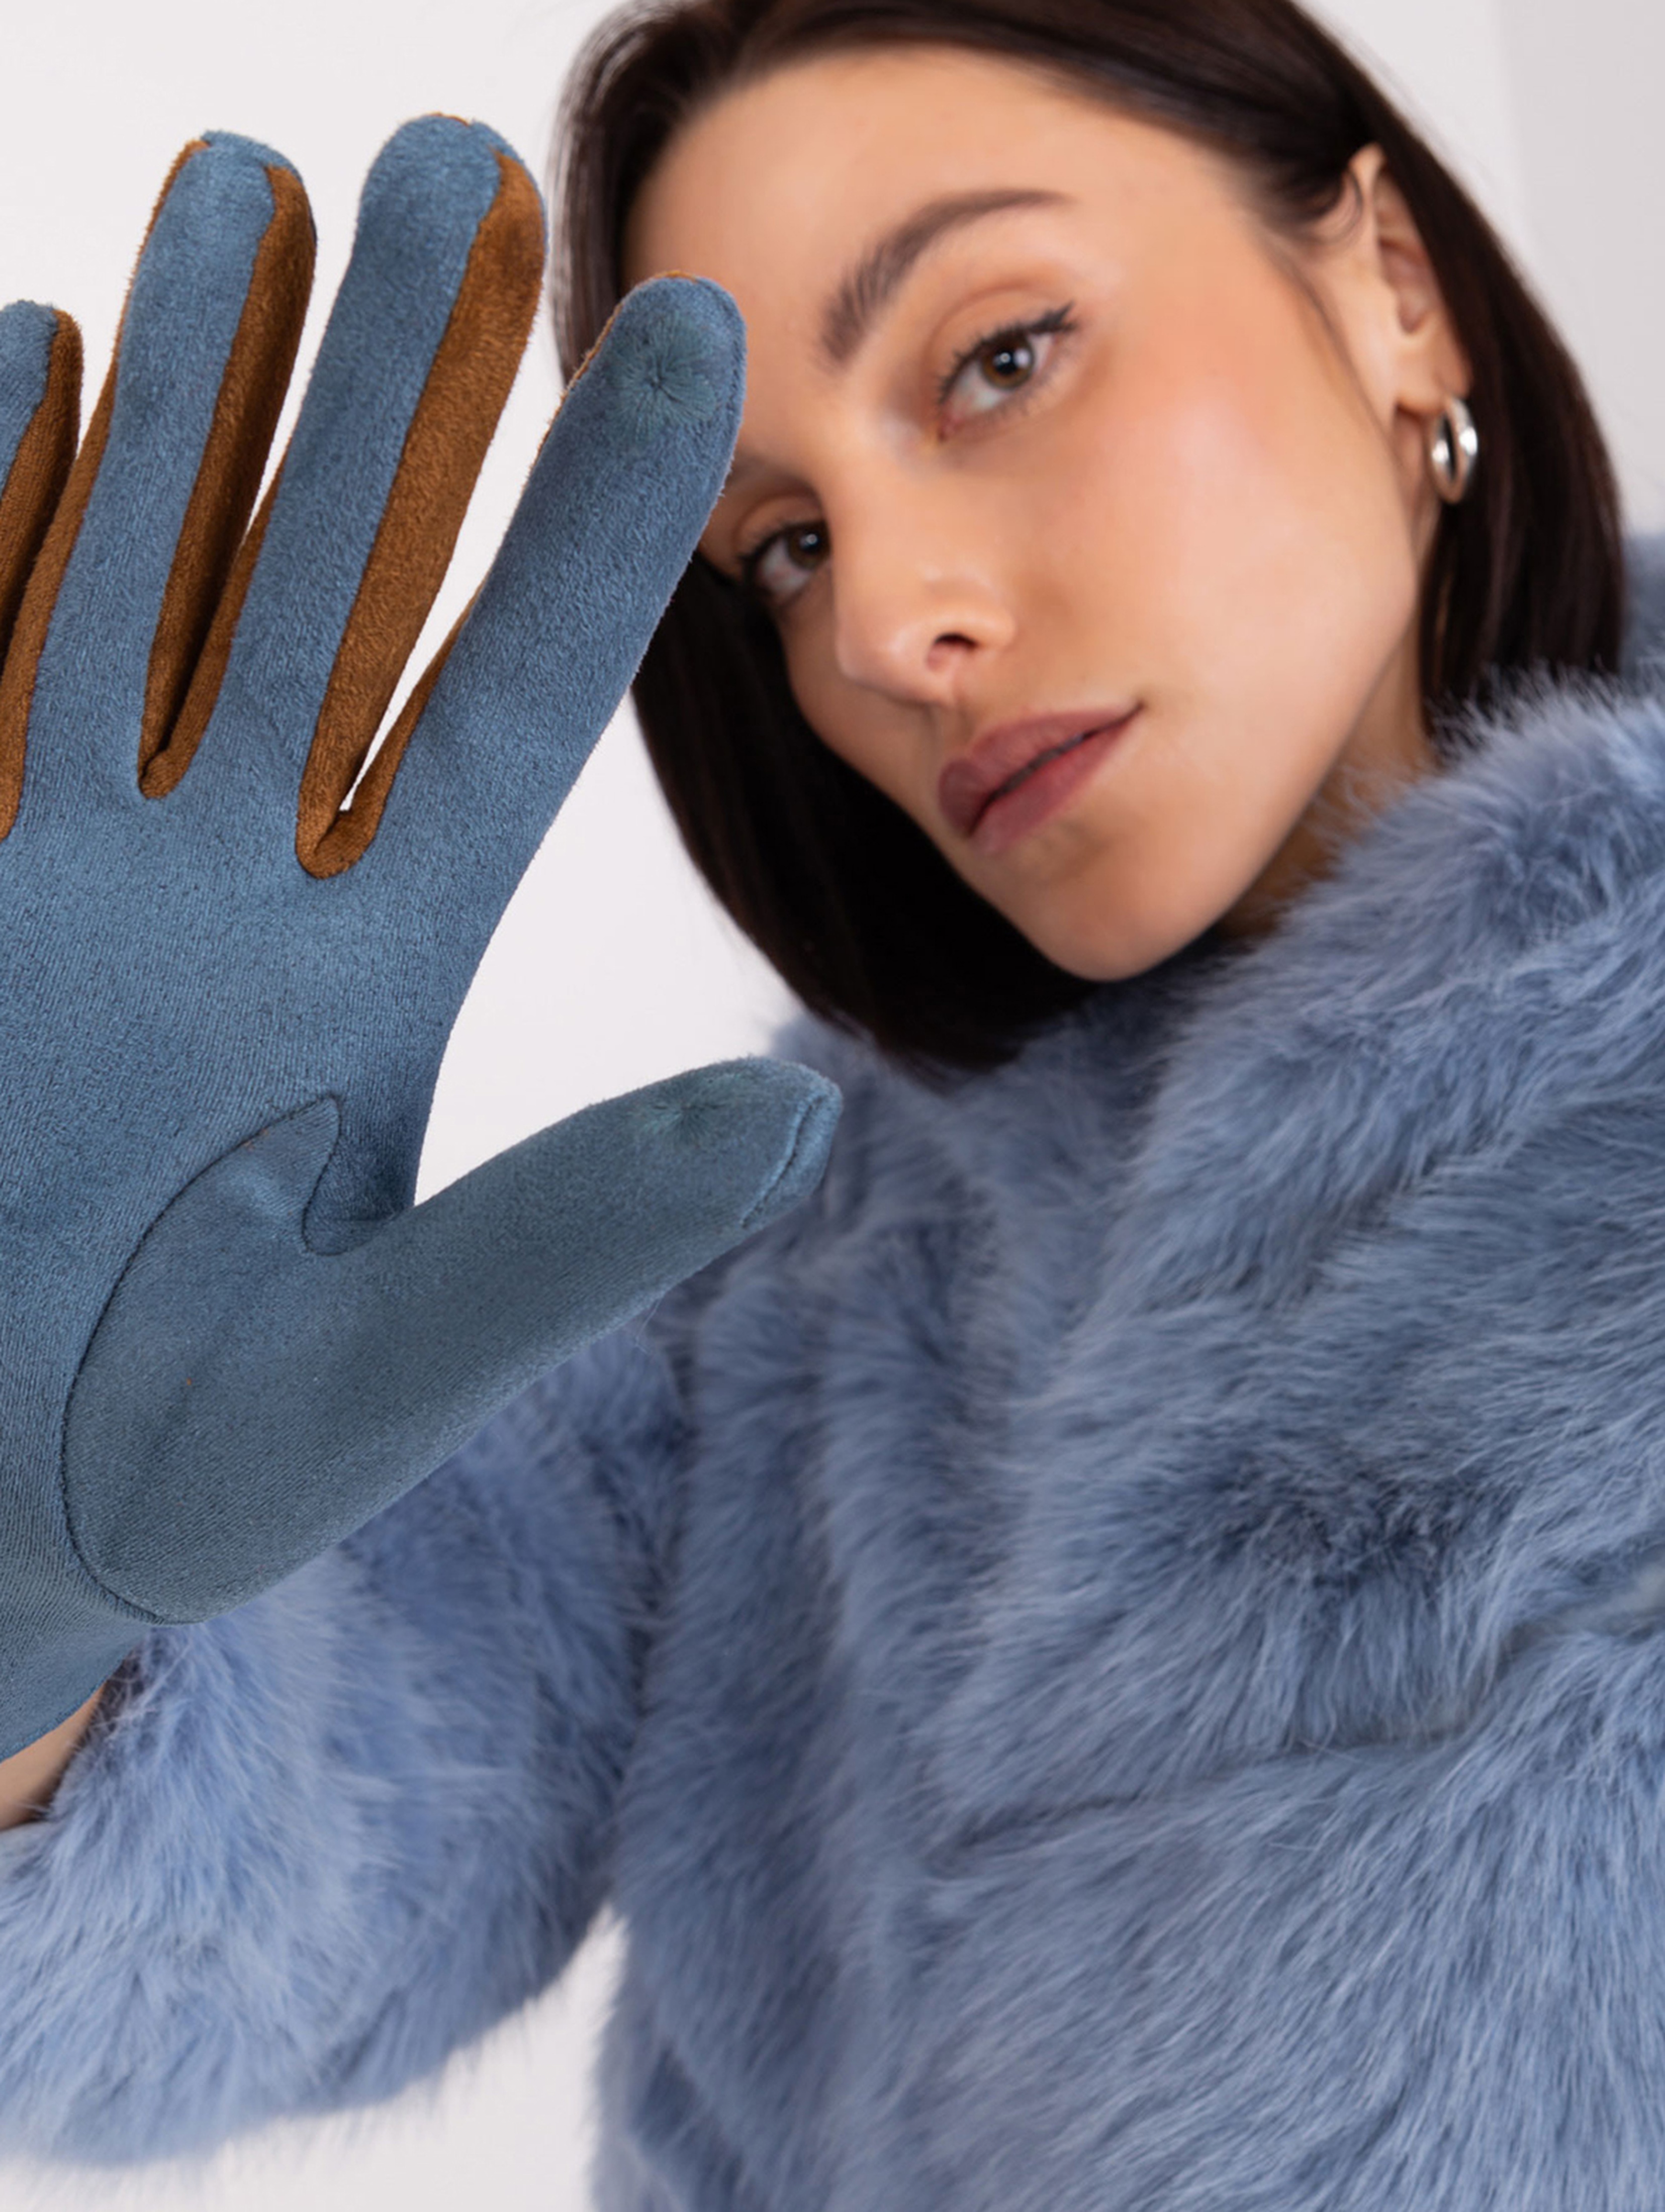 Brudnoniebieskie rękawiczki z plecionymi paskami